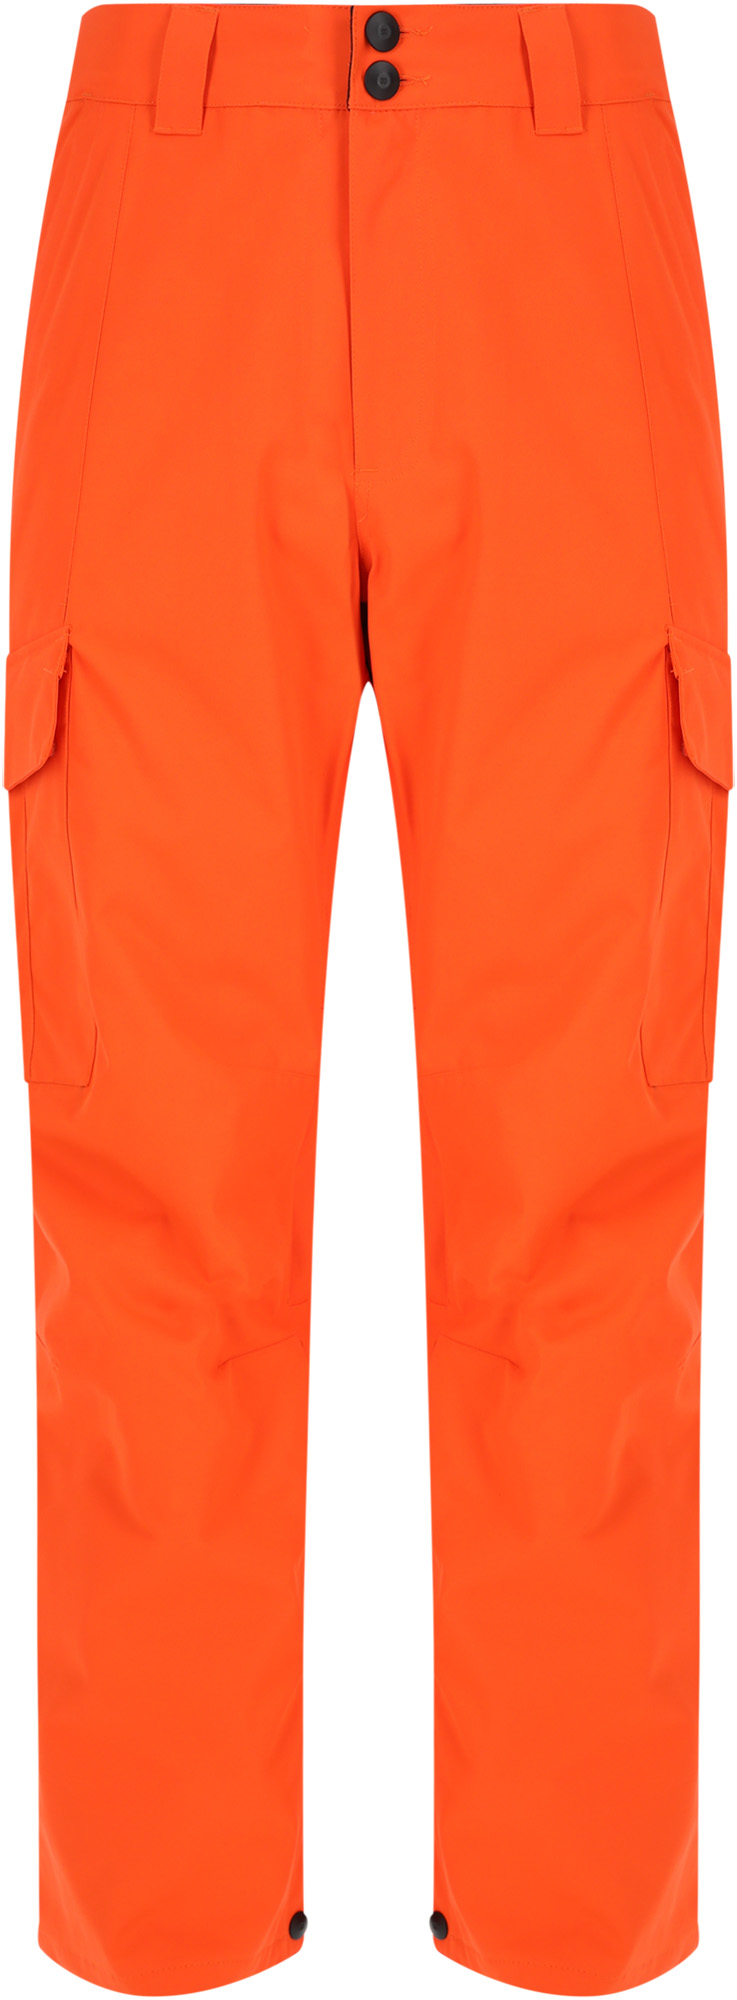 фото Спортивные брюки dc banshee orangeade, l int